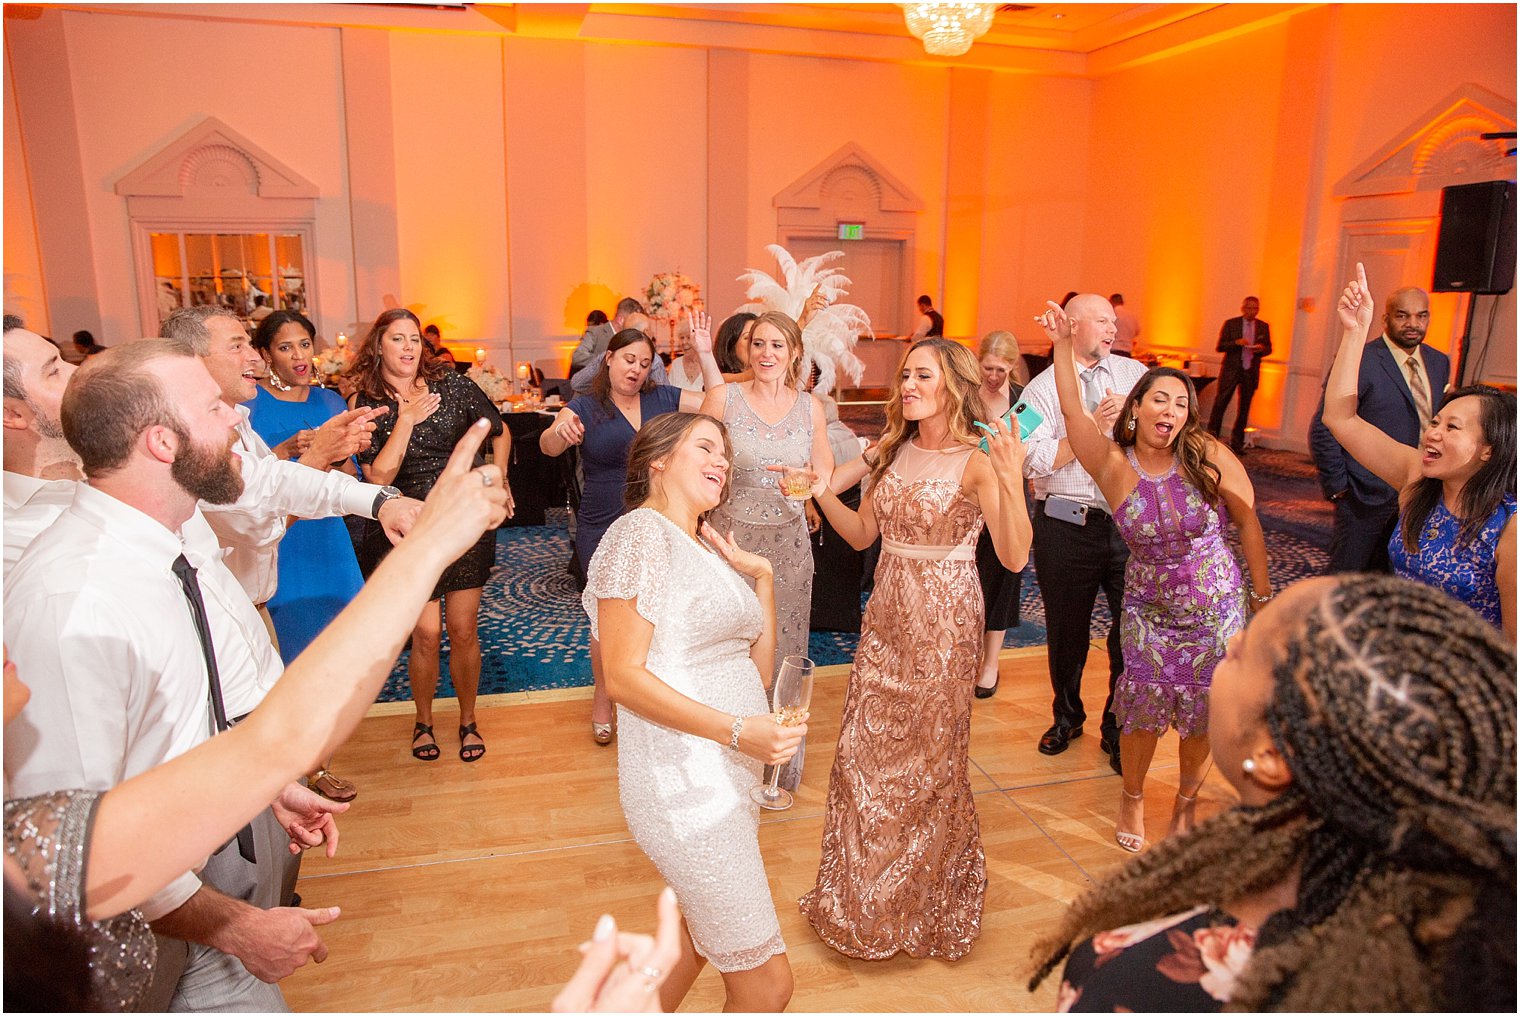 bride dances with bridesmaid at wedding reception at Ocean Place Resort